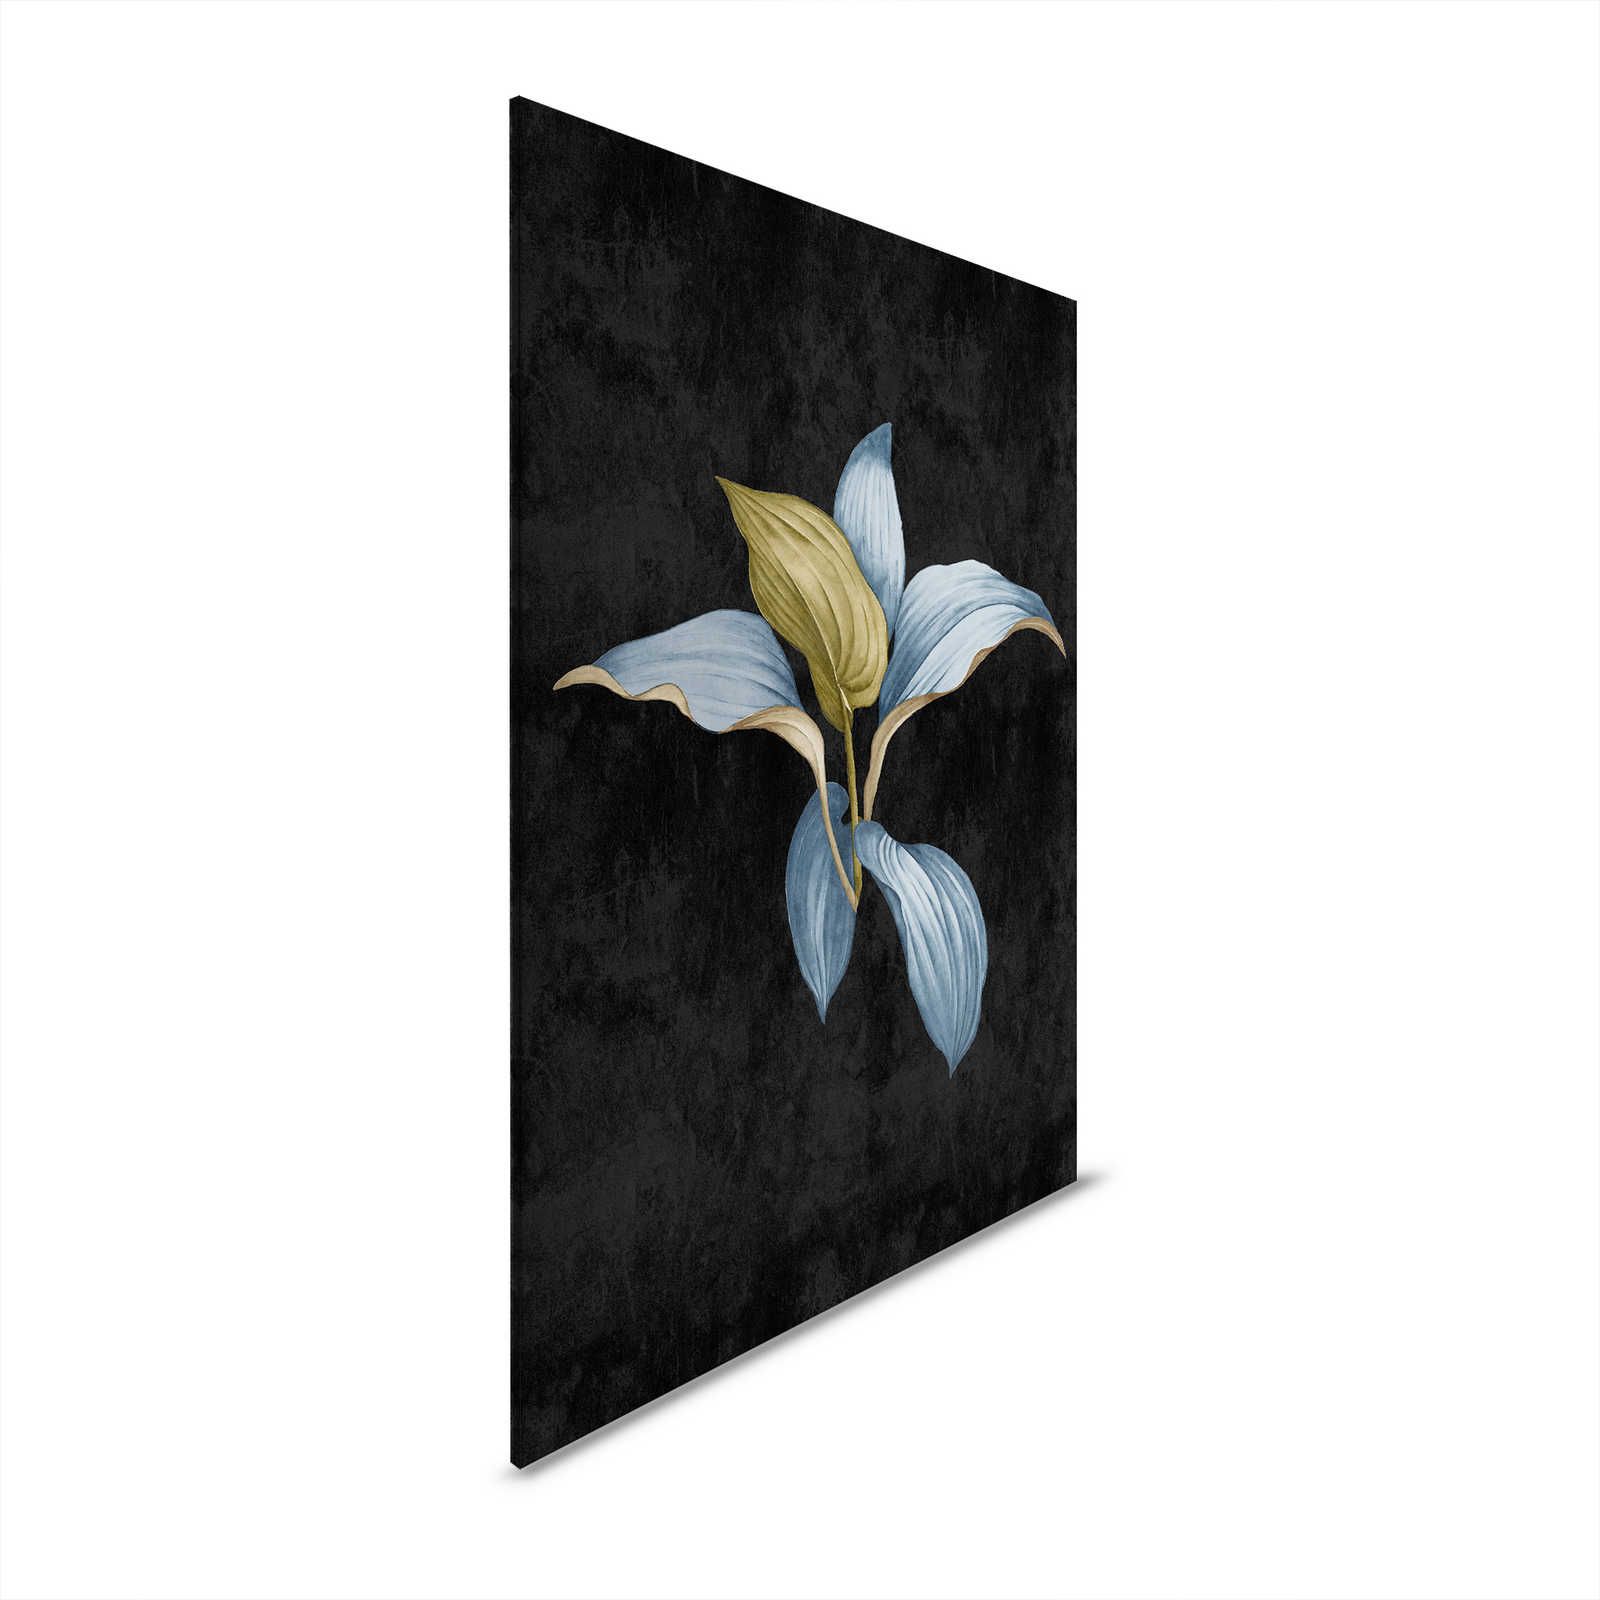 Fiji 3 - Donker canvas schilderij Botanisch ontwerp in blauw & groen - 0.80 m x 1.20 m
